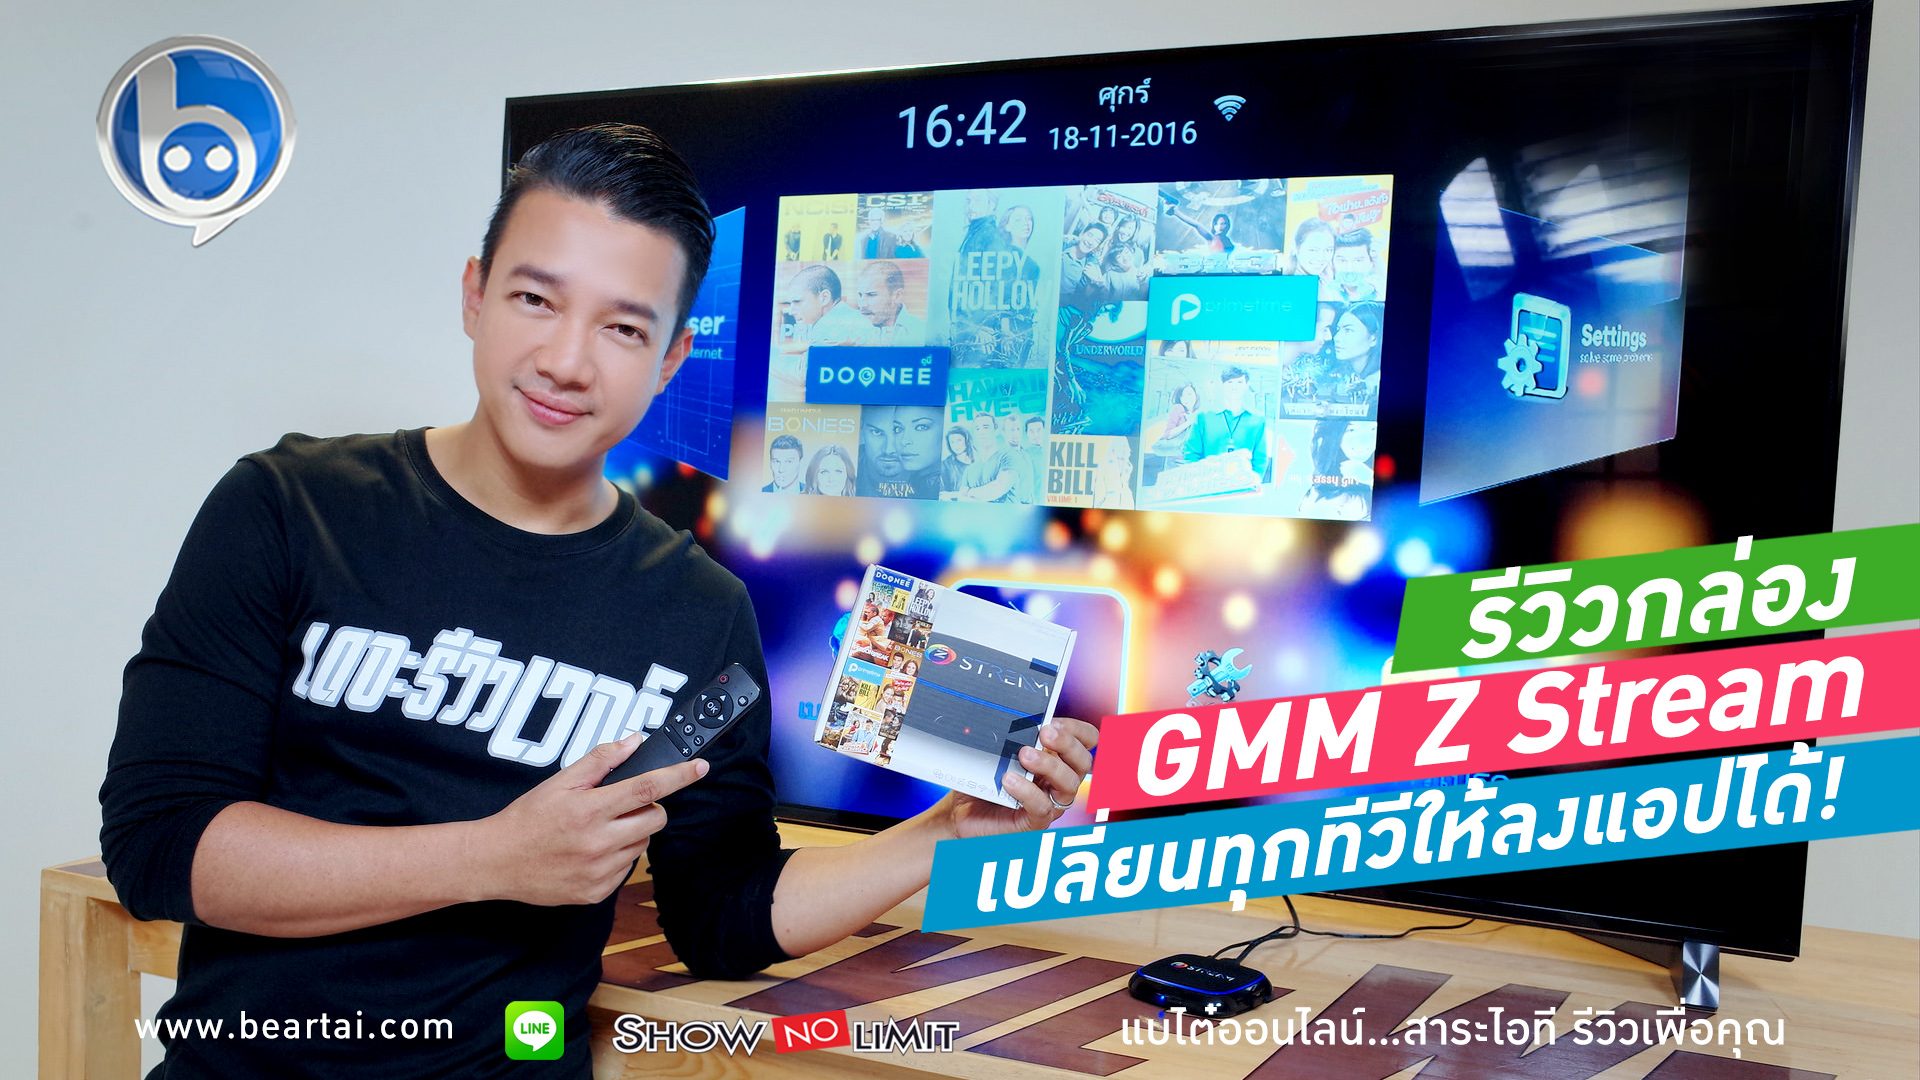 รีวิวกล่อง GMM Z Stream เปลี่ยนทุกทีวีให้ให้ลงแอปได้